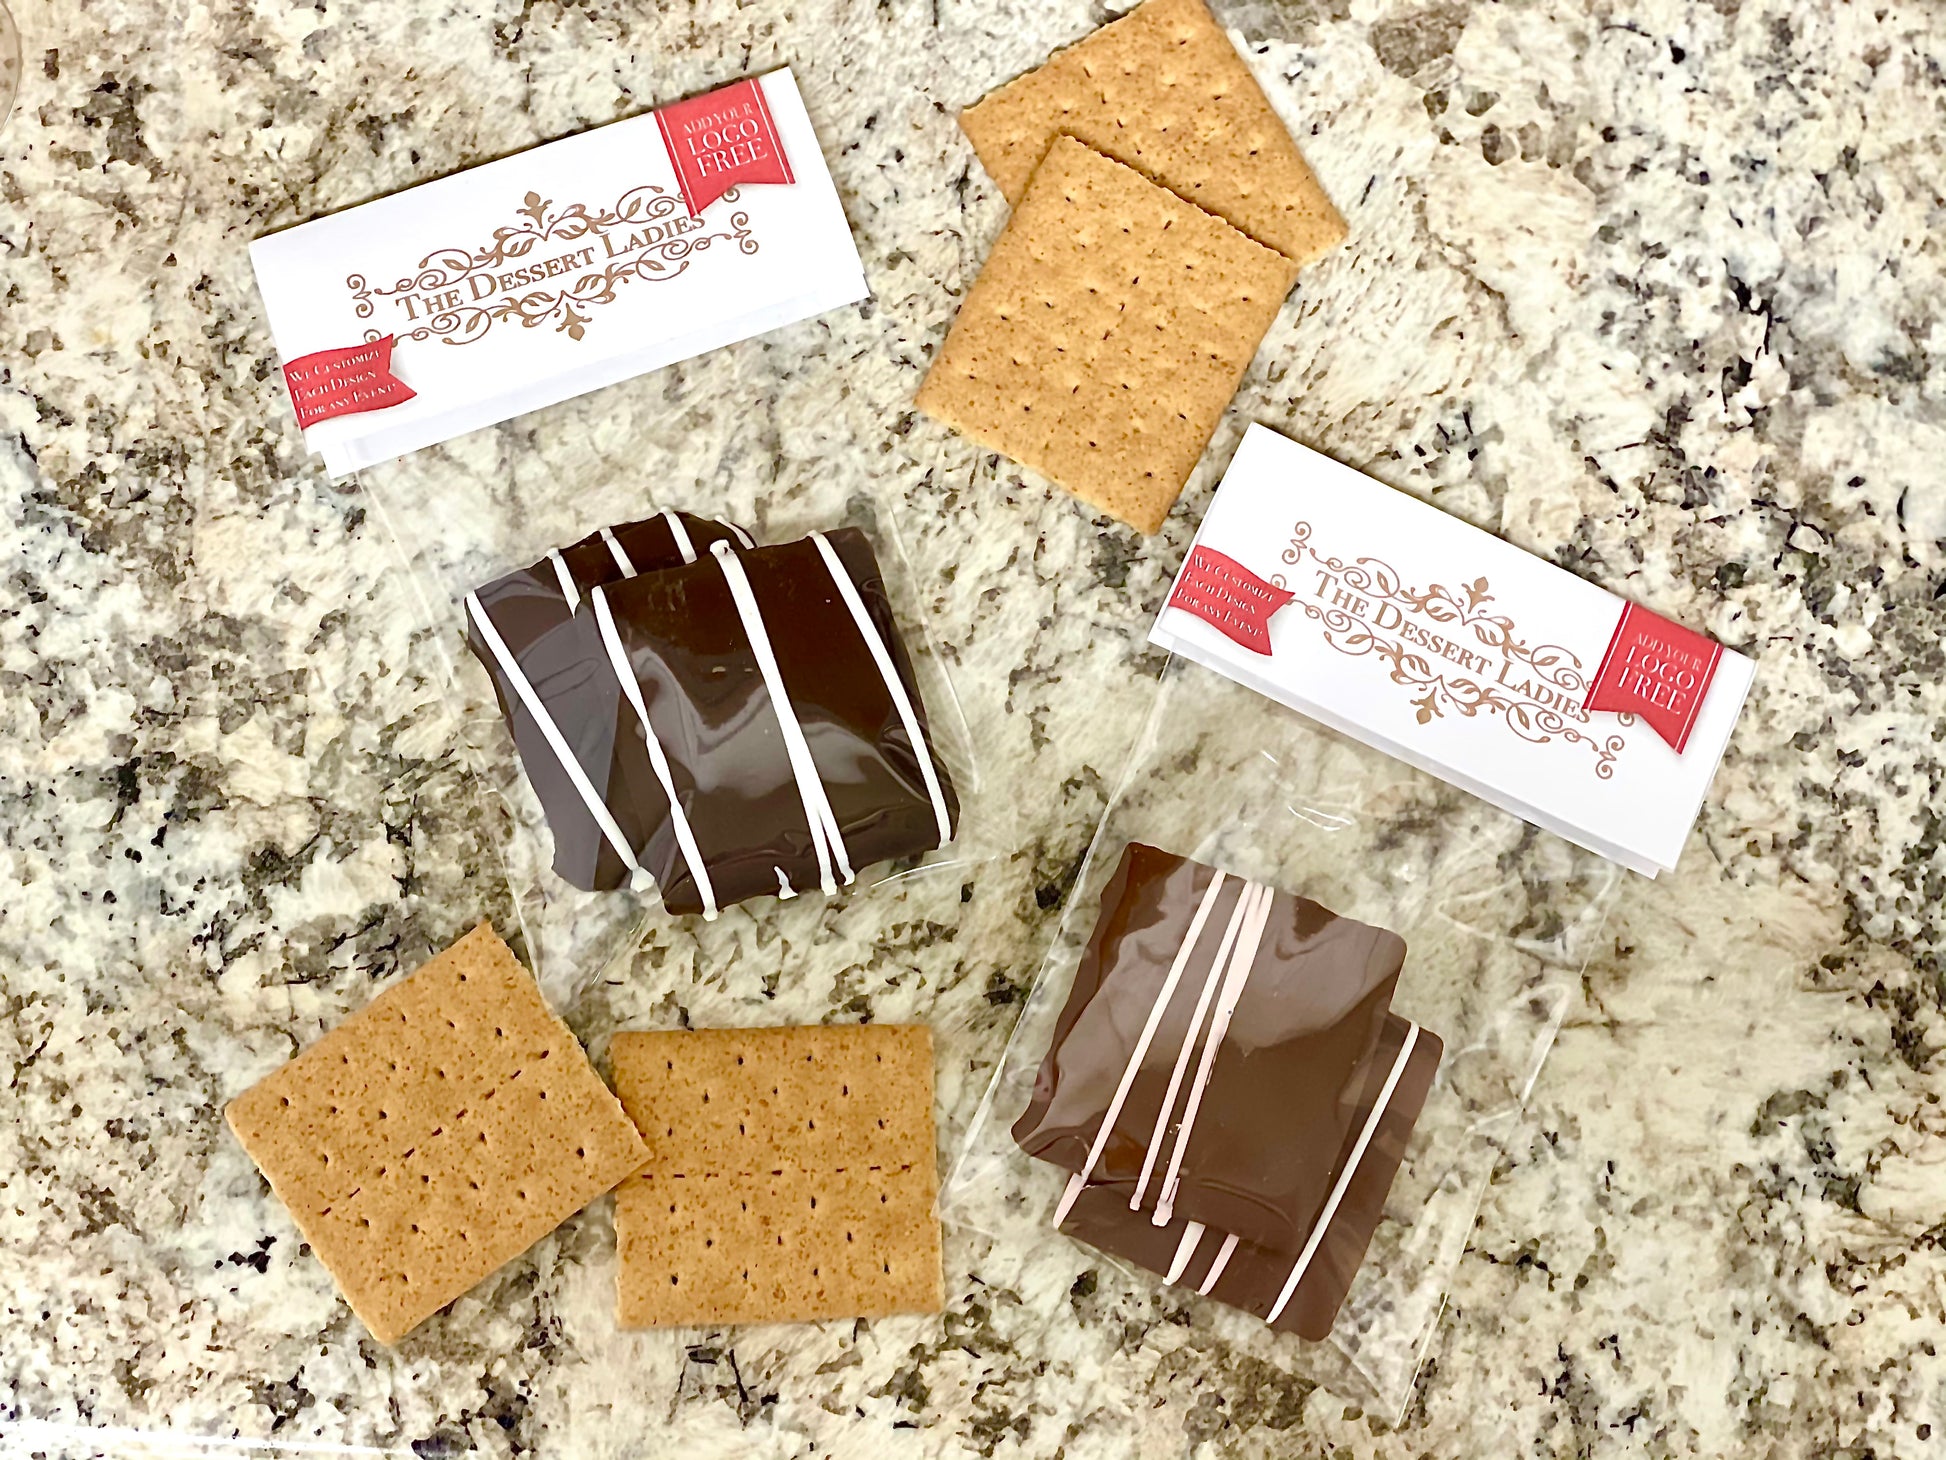 Chocolate Covered Graham Cracker Packs - The Dessert Ladies